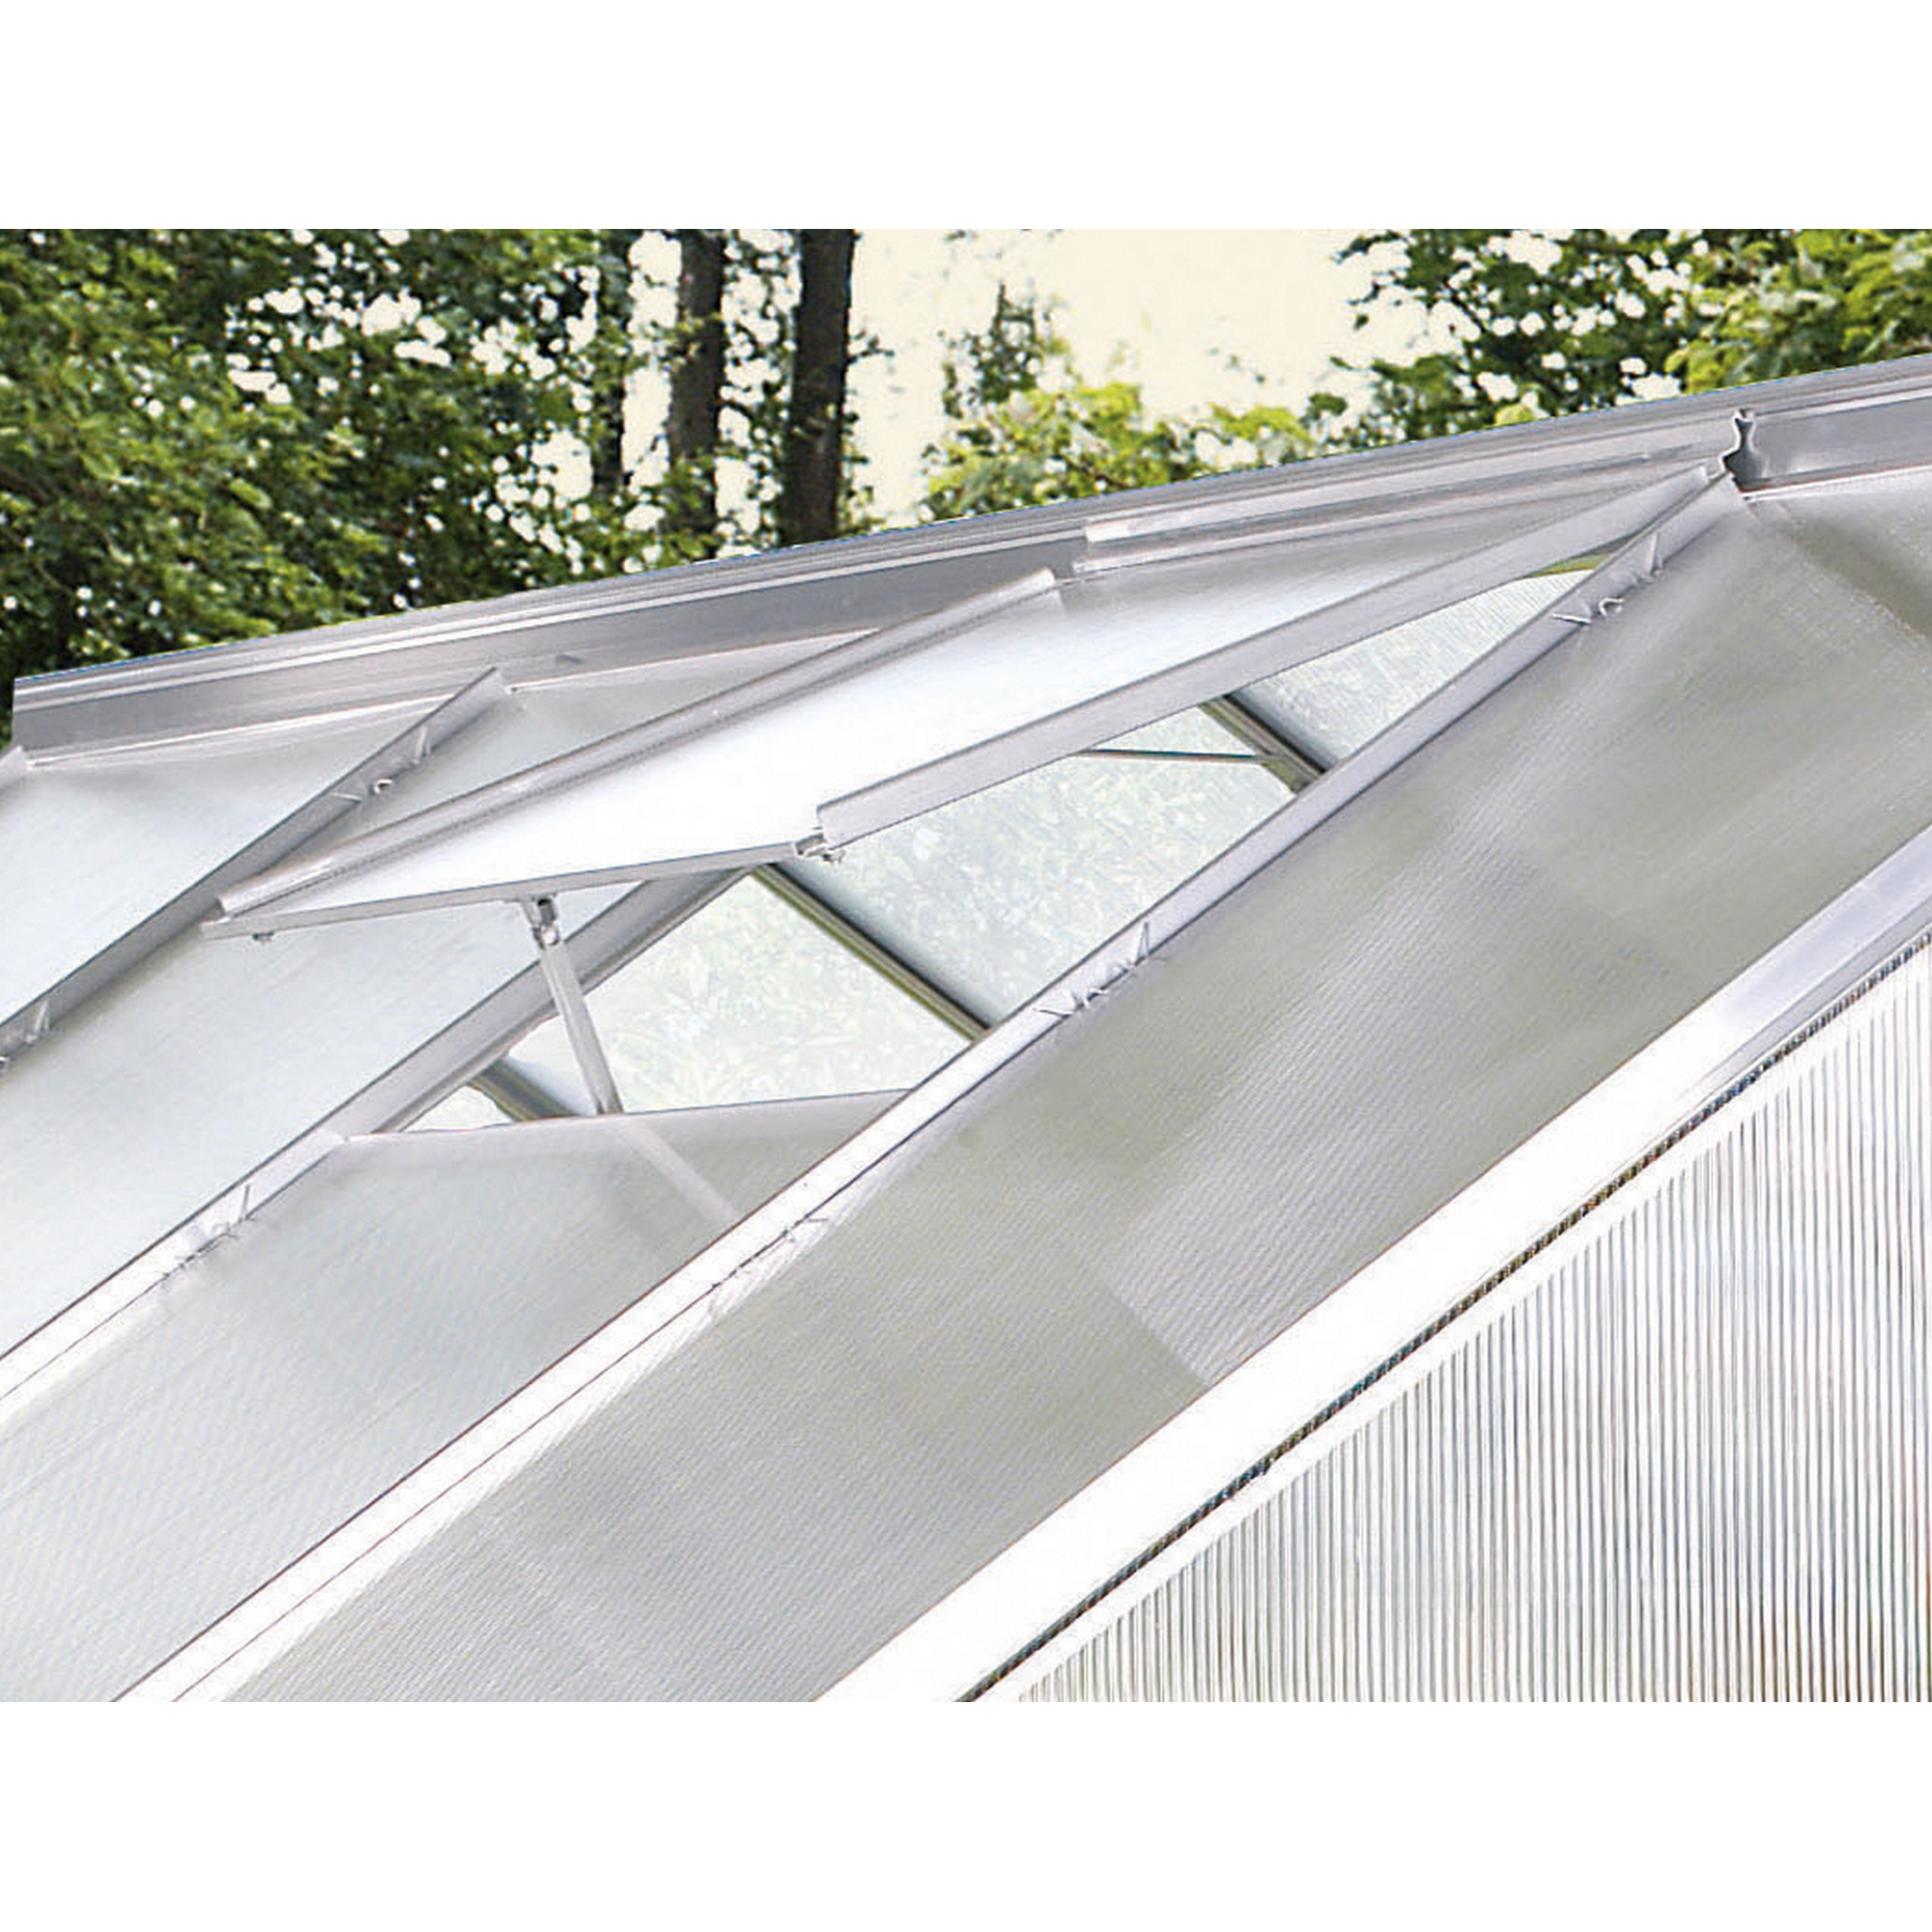 Dachfenster für Gewächshaus 'Calypso' alufarben 60,2 x 73,6 cm + product picture